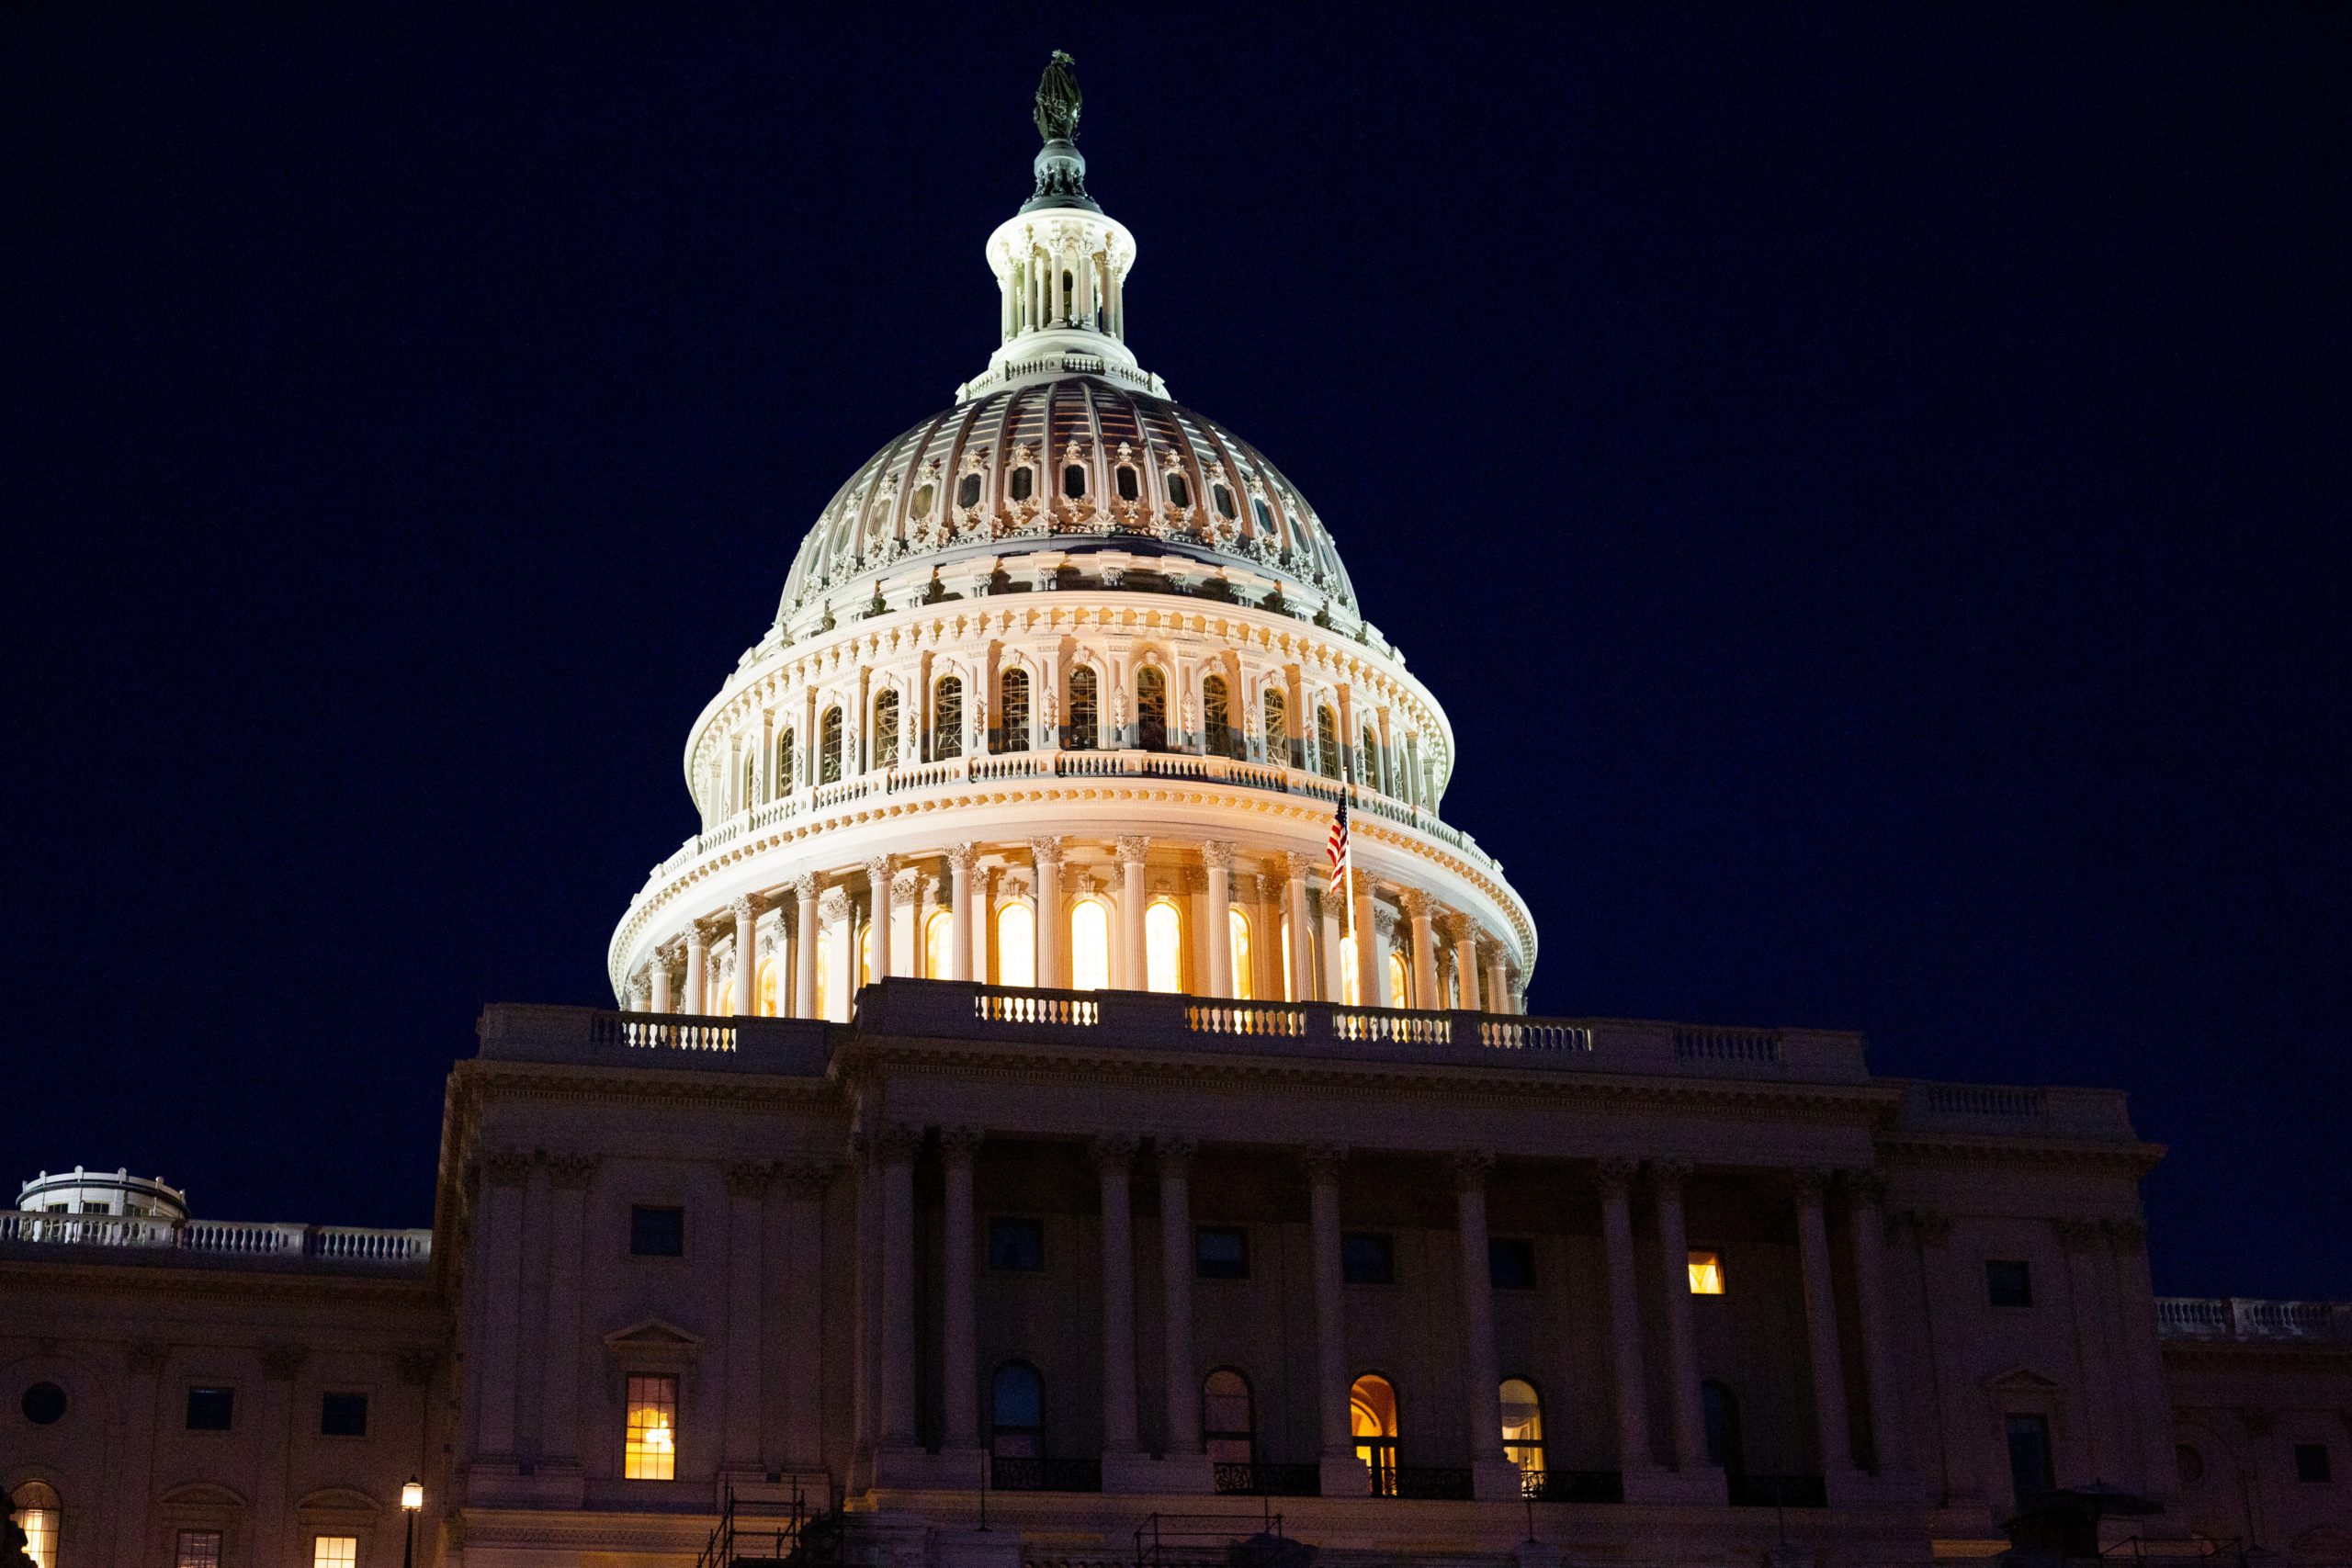 Congress at Night: Darren Halstead @ unsplash